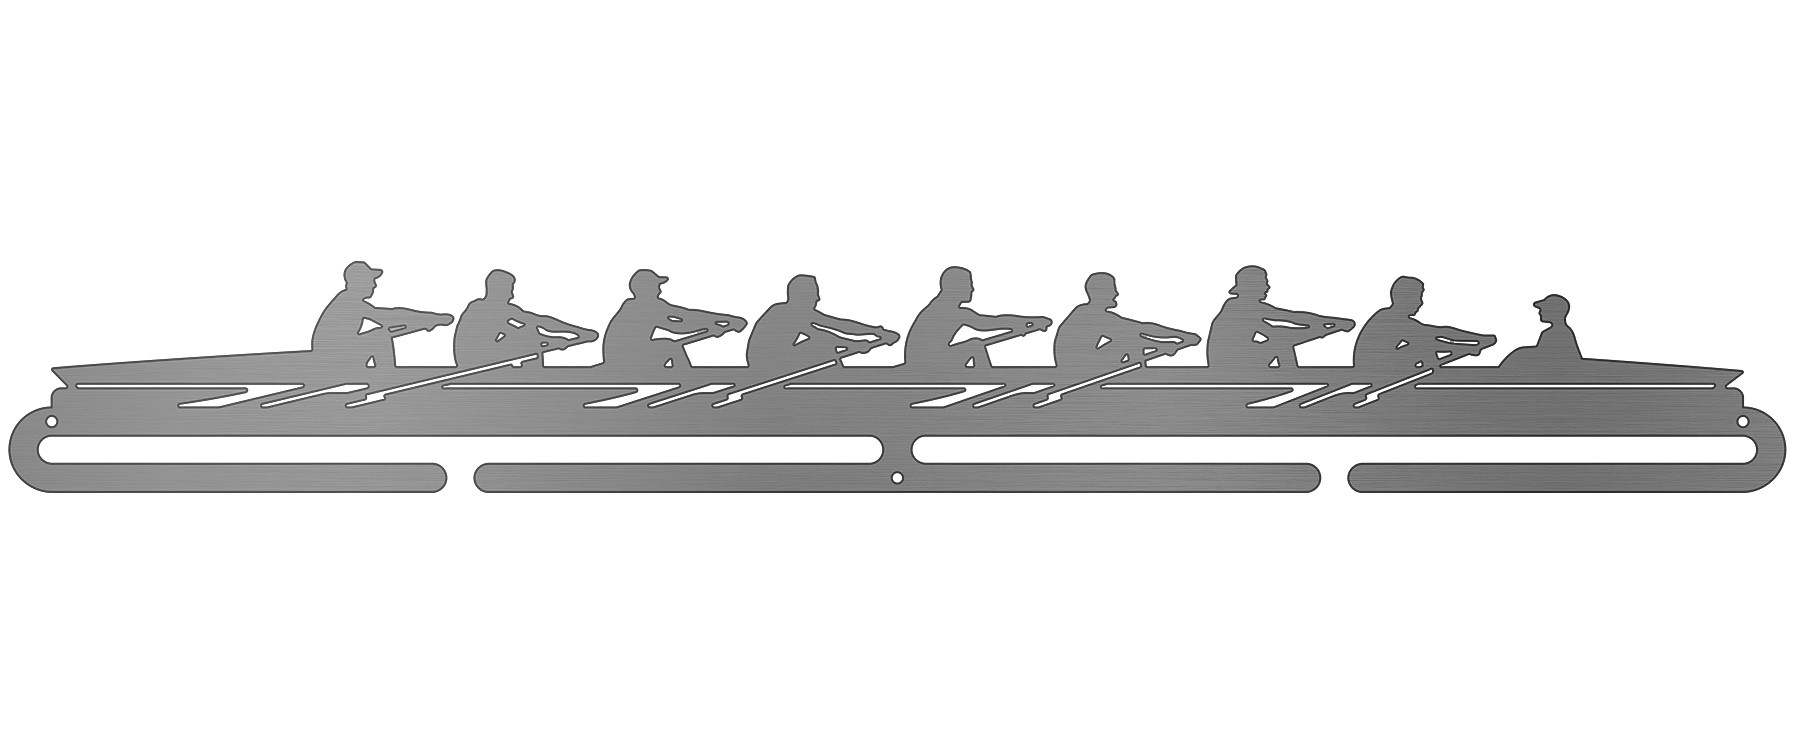 Rowing Scene - Male